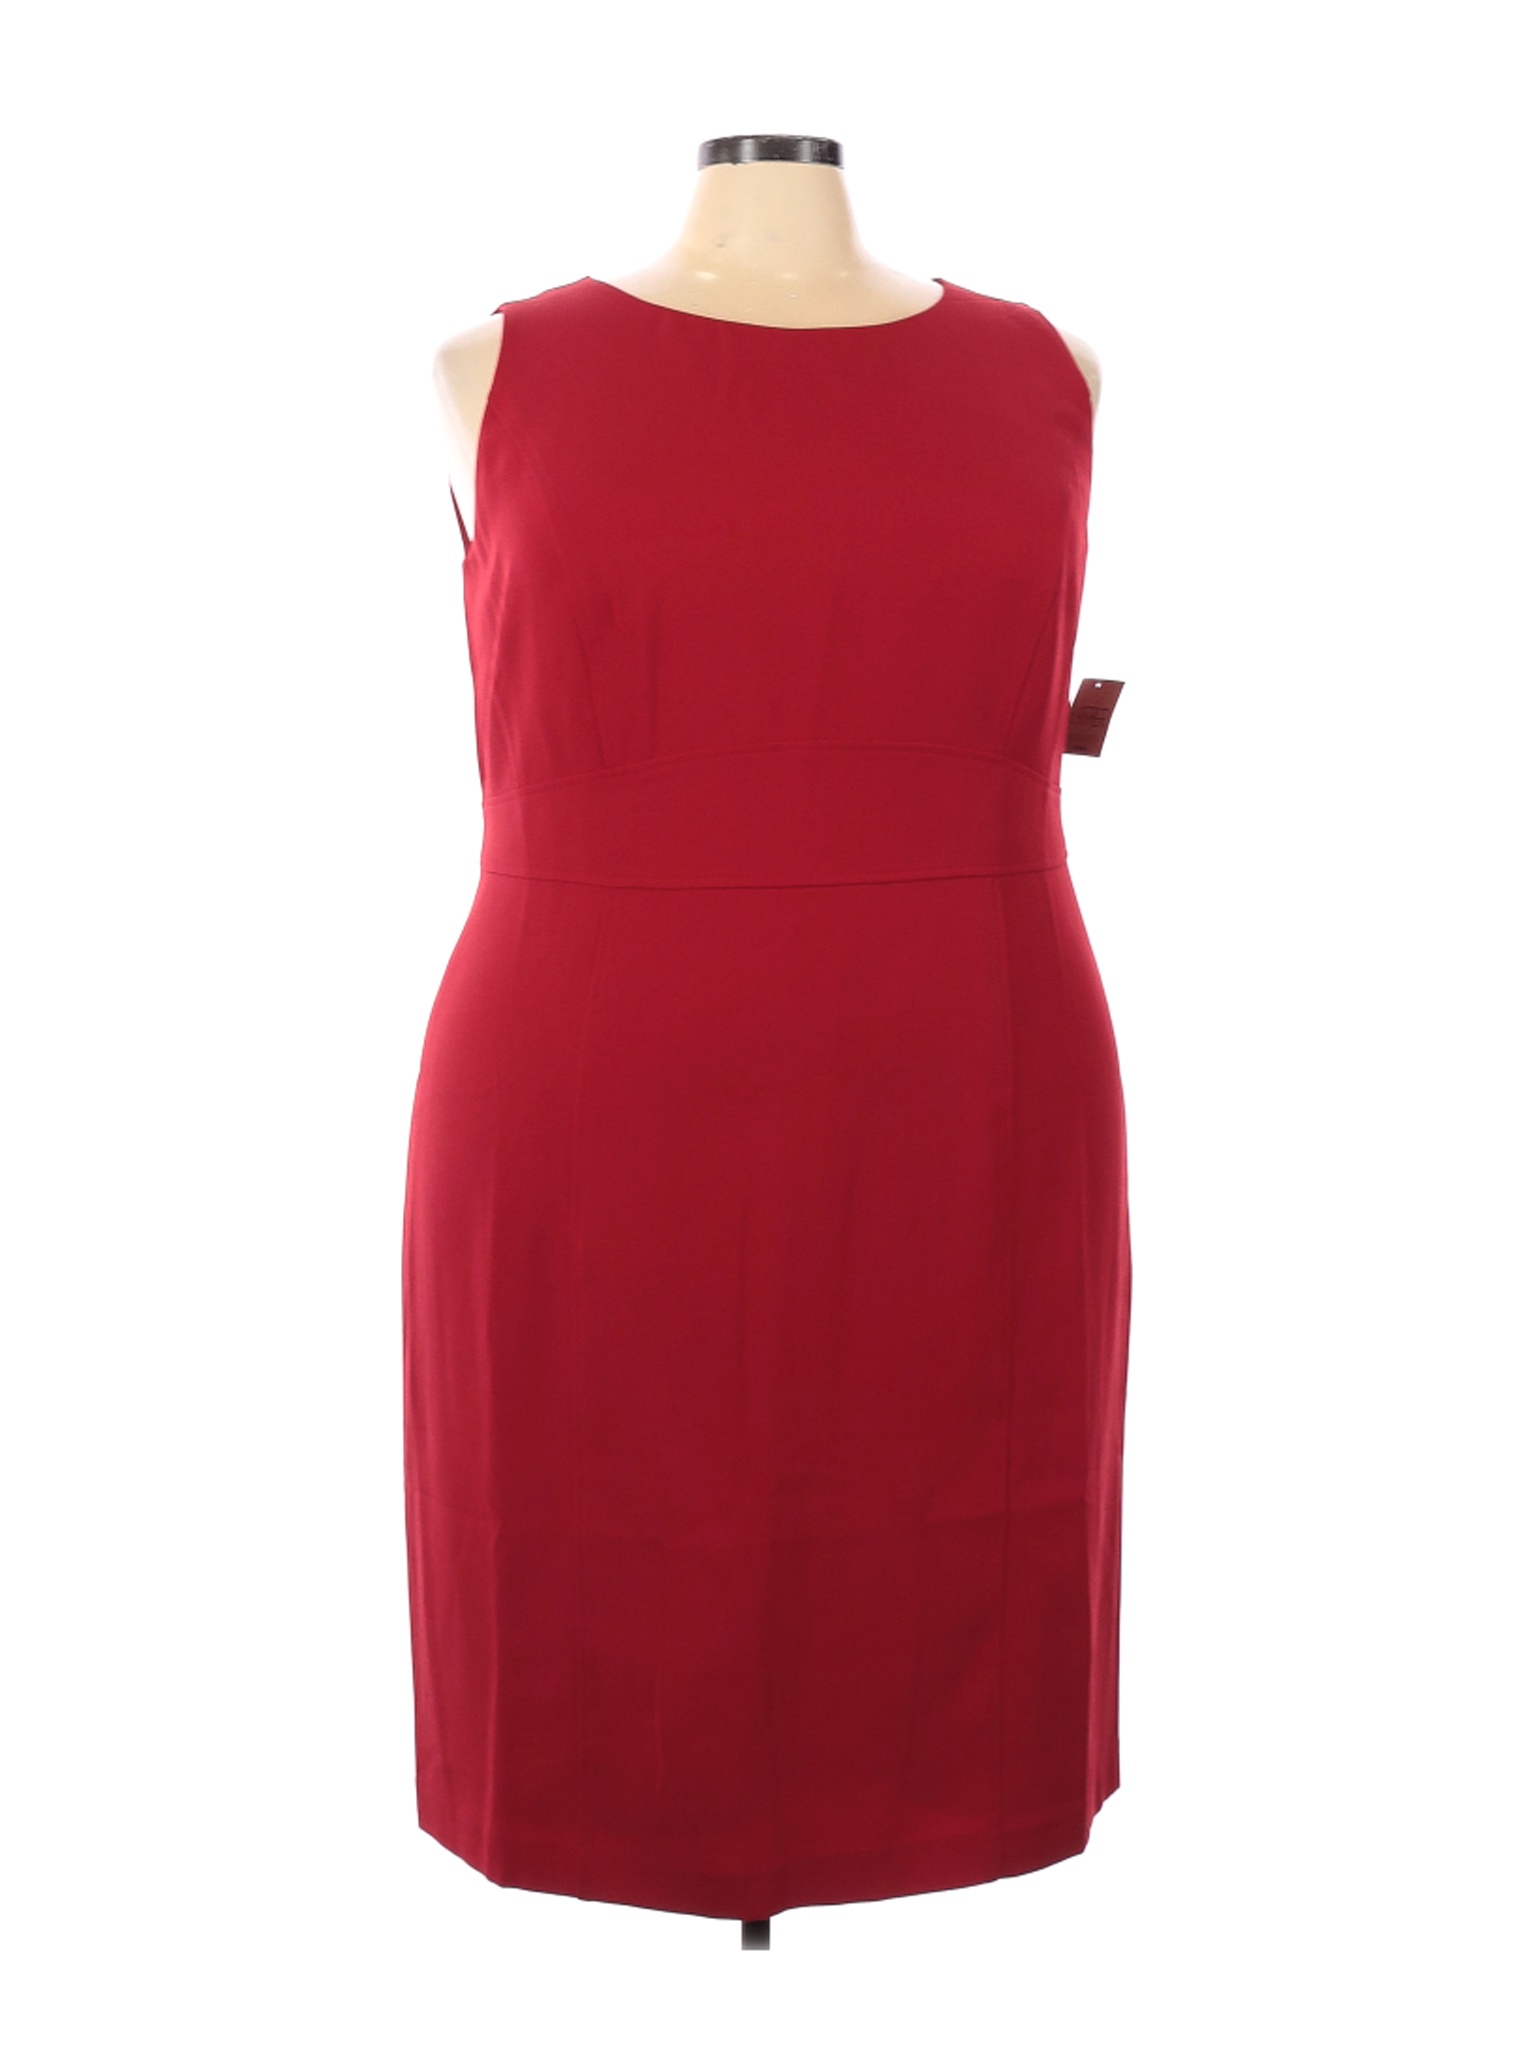 NWT Kasper Women Red Casual Dress 20 Plus | eBay